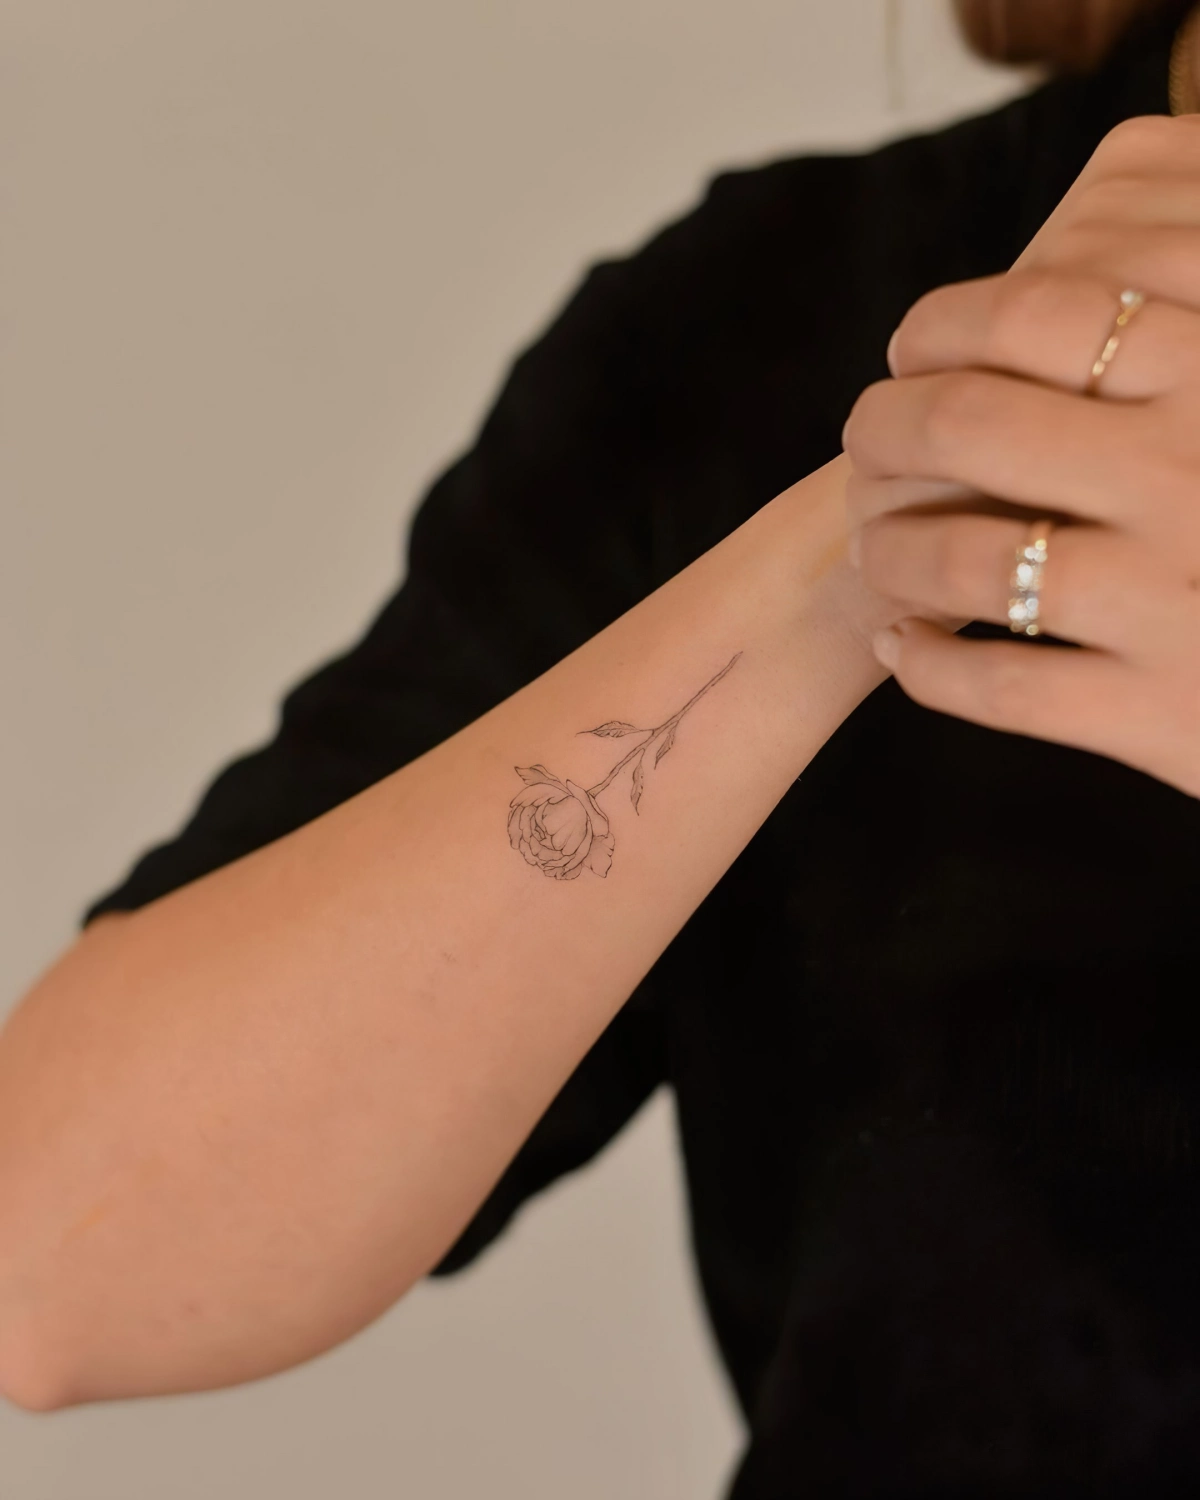 tatouage rose femme dessin minimaliste poignet bijoux bagues or blouse noire